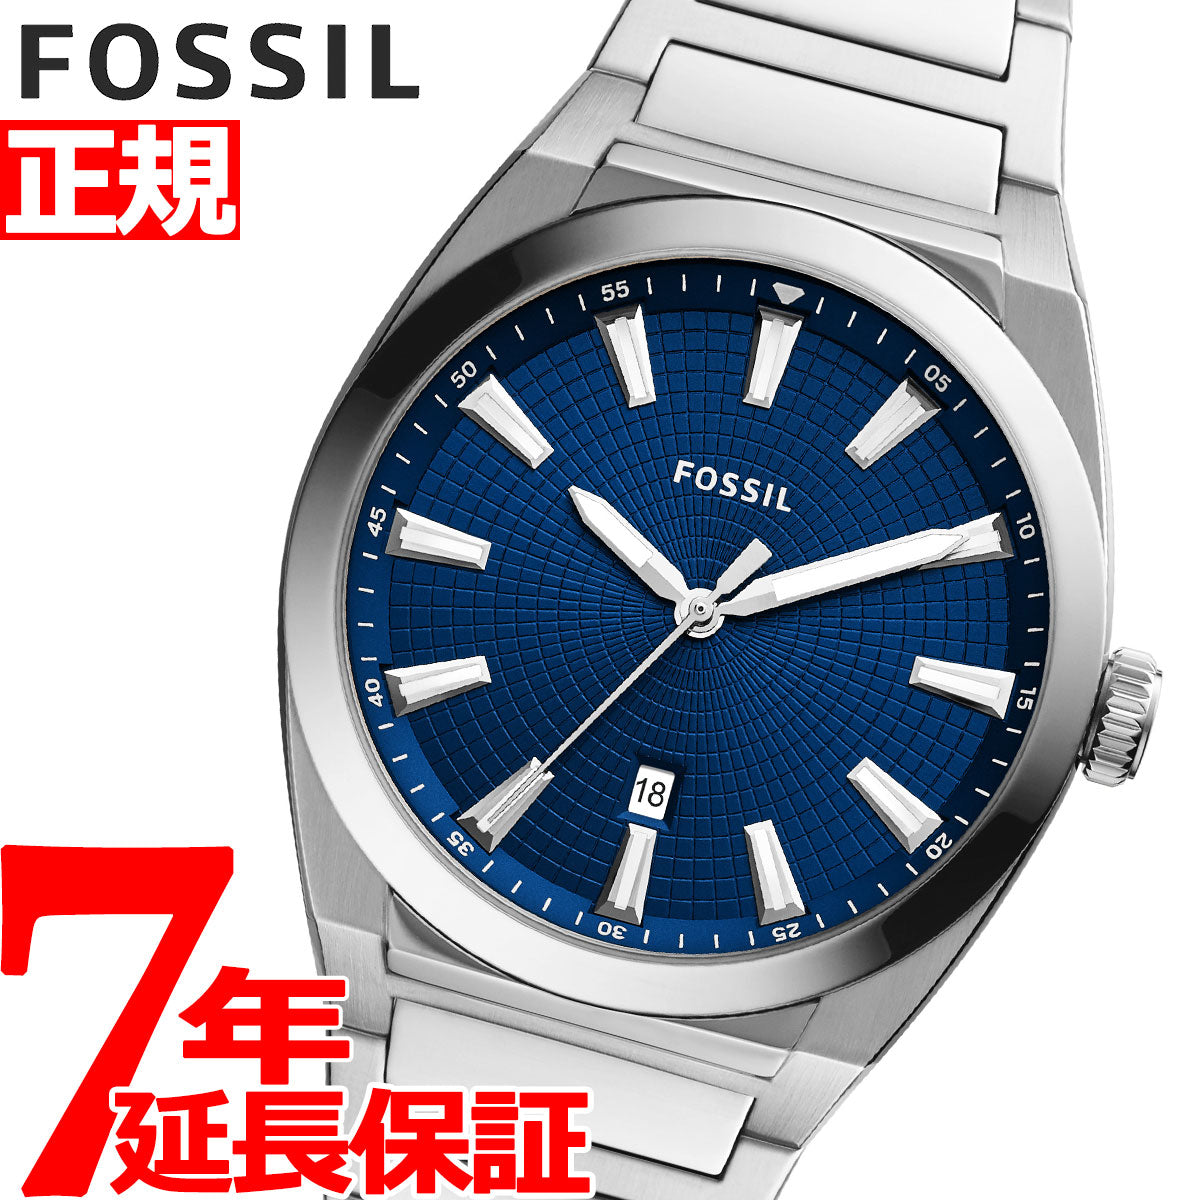 フォッシル FOSSIL 腕時計 メンズ エヴァレット EVERETT 3 HAND FS5822